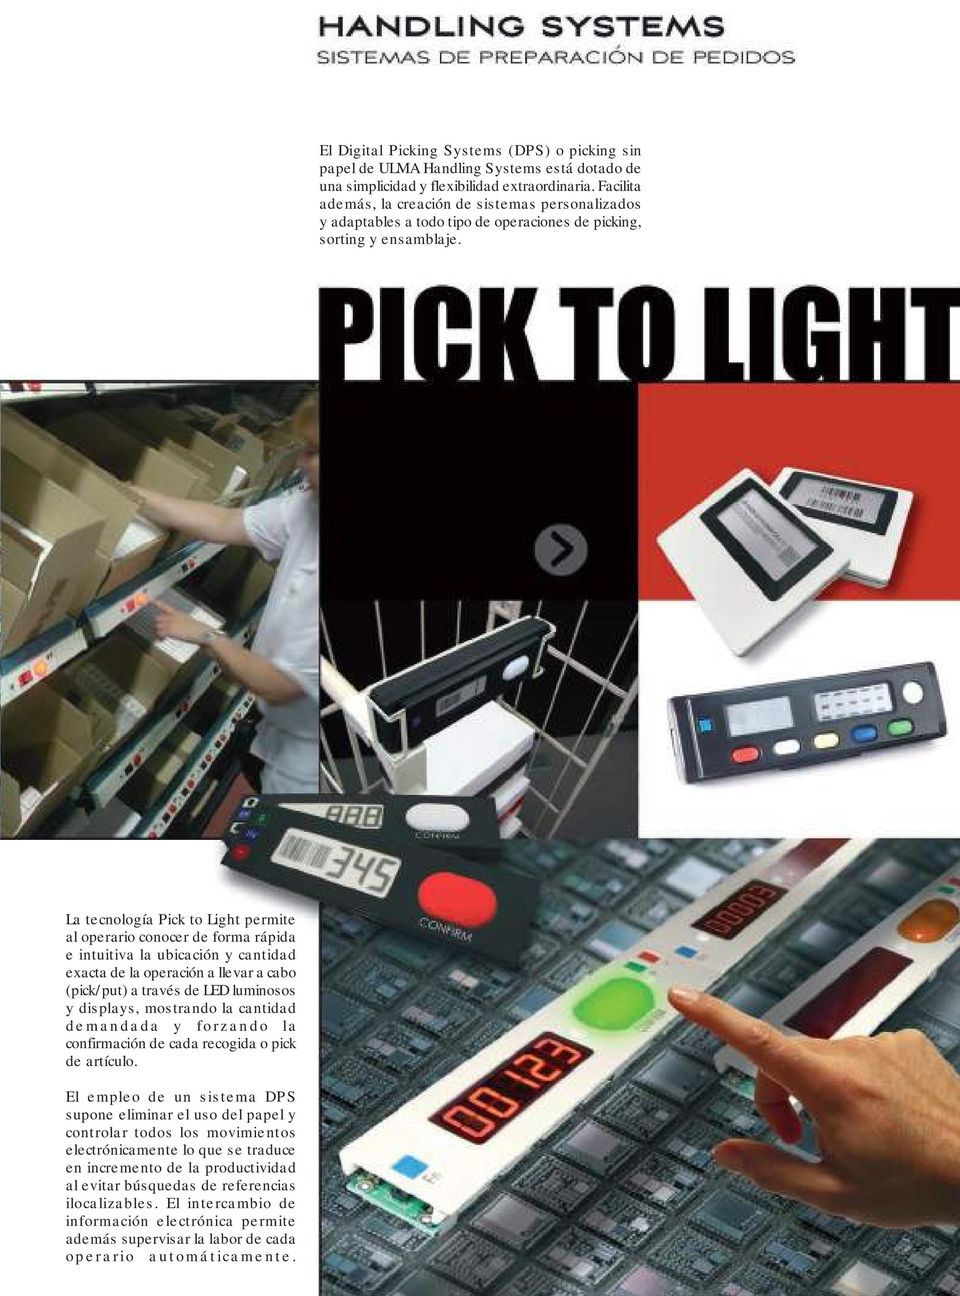 La tecnología Pick to Light permite al operario conocer de forma rápida e intuitiva la ubicación y cantidad exacta de la operación a llevar a cabo (pick/put) a través de LED luminosos y displays,